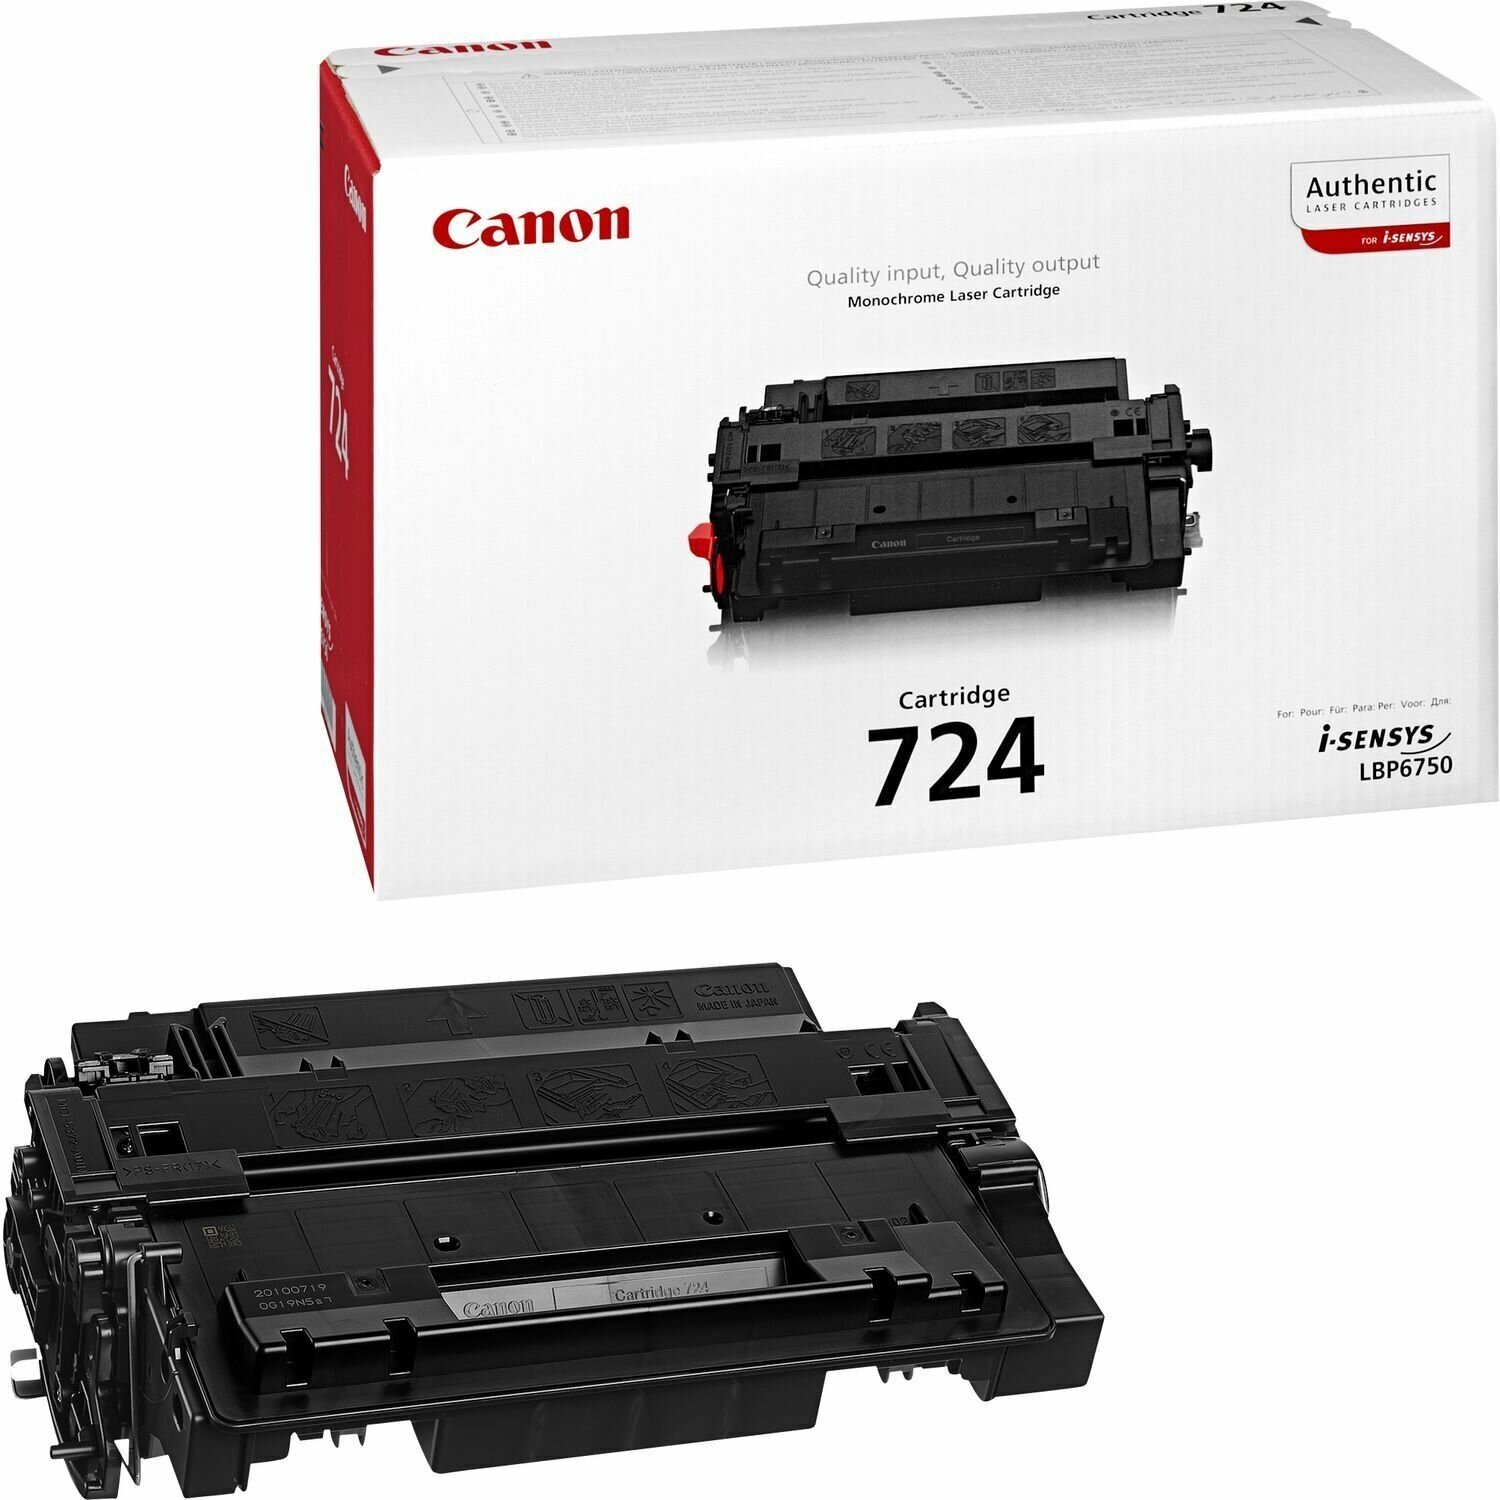 Картридж для лазерного принтера Canon - фото №13